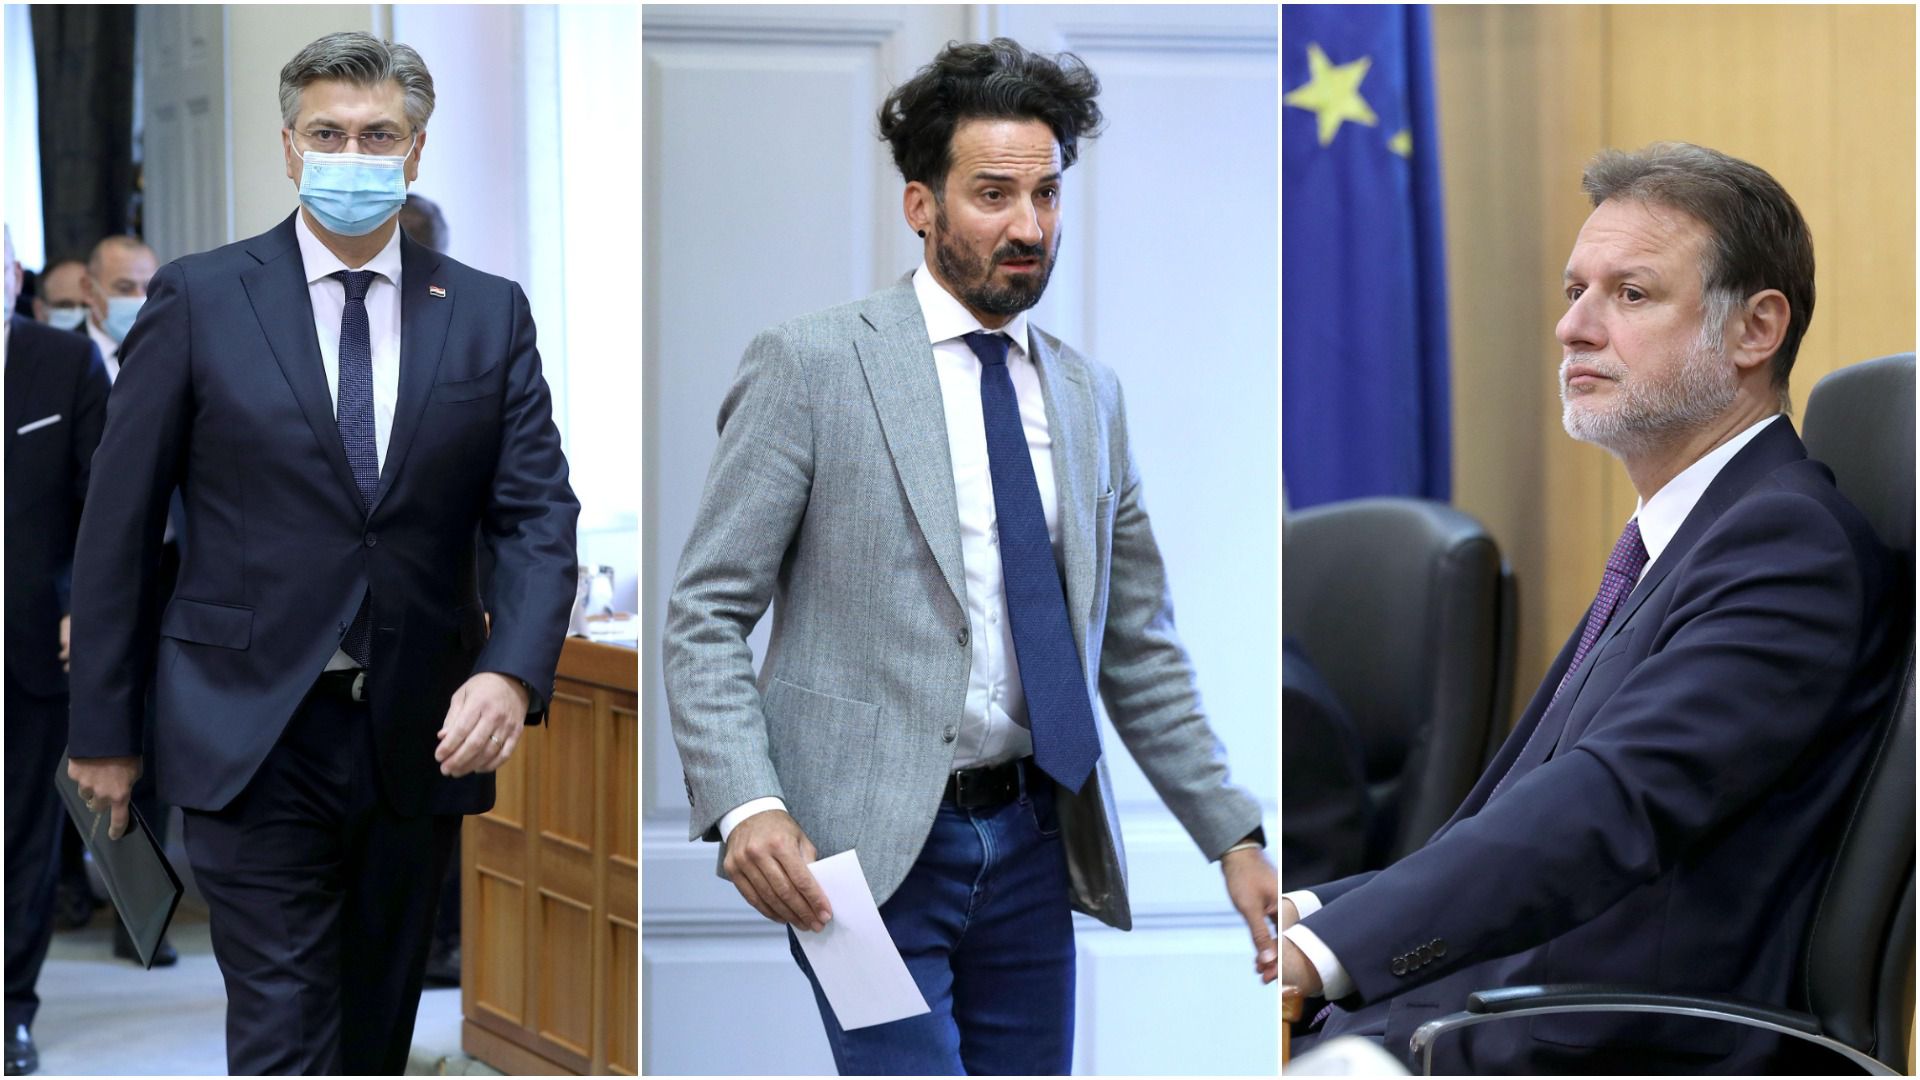 Stručnjak o frizurama zastupnika: 'Miletić se traži, Plenković ima dobru frizuru, a Jandroković može poraditi na njoj'